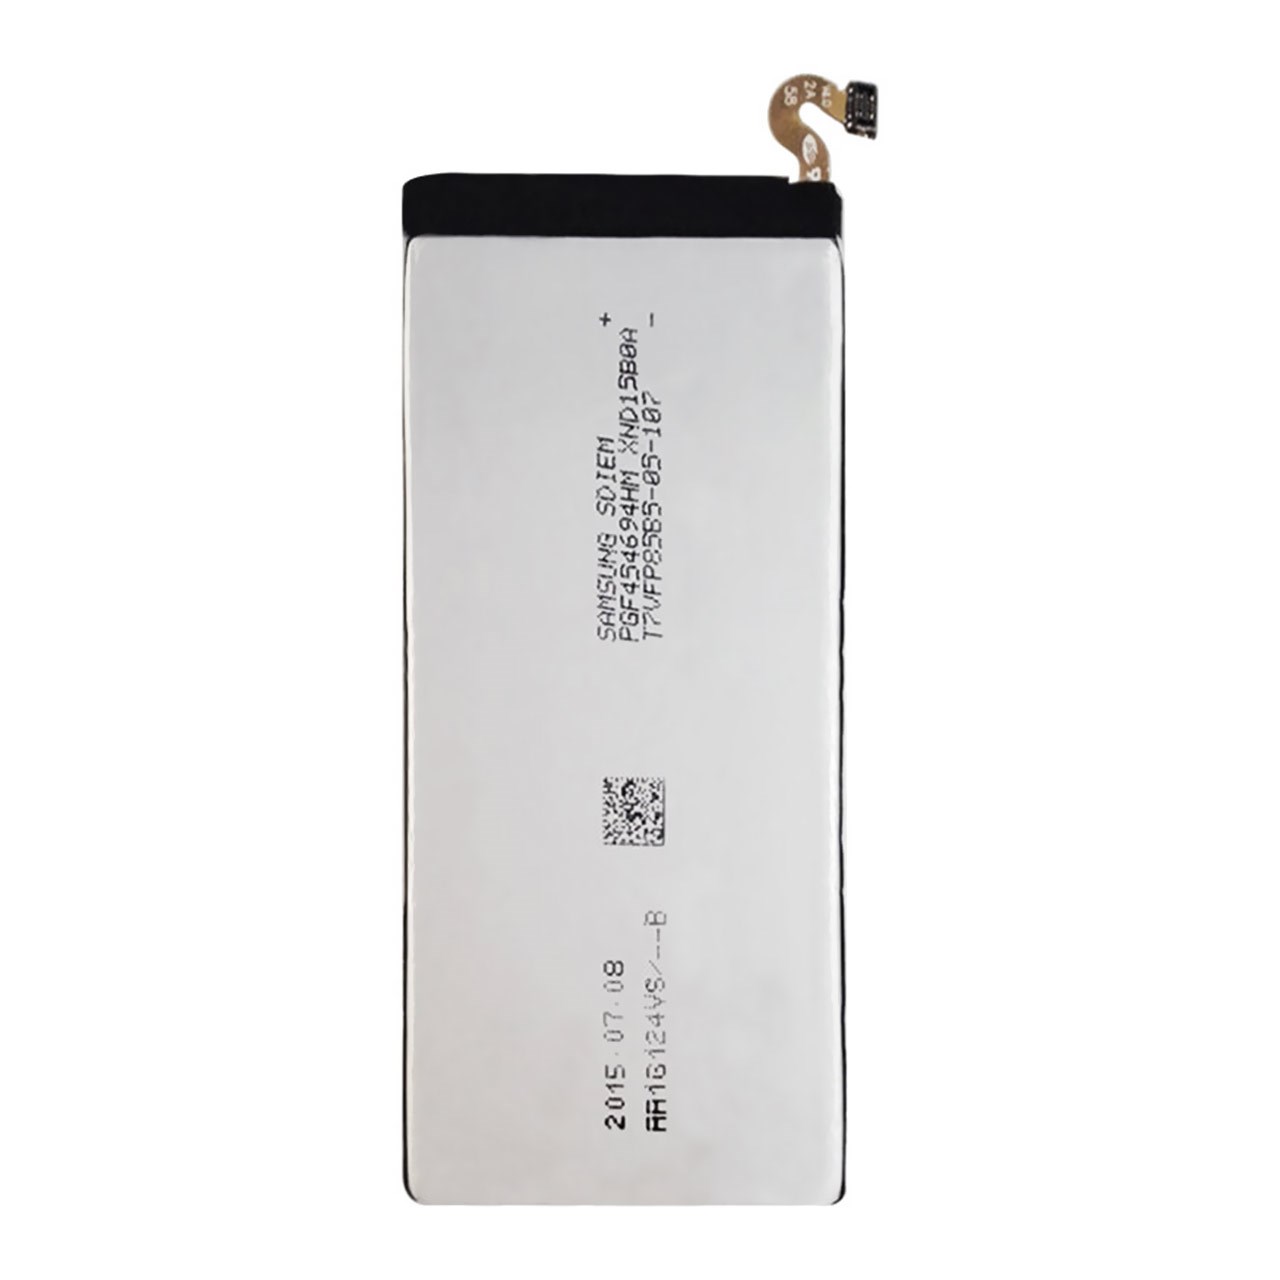 باتری موبایل مدل Galaxy E7 با ظرفیت 2950mAh مناسب برای گوشی موبایل سامسونگ Galaxy E7